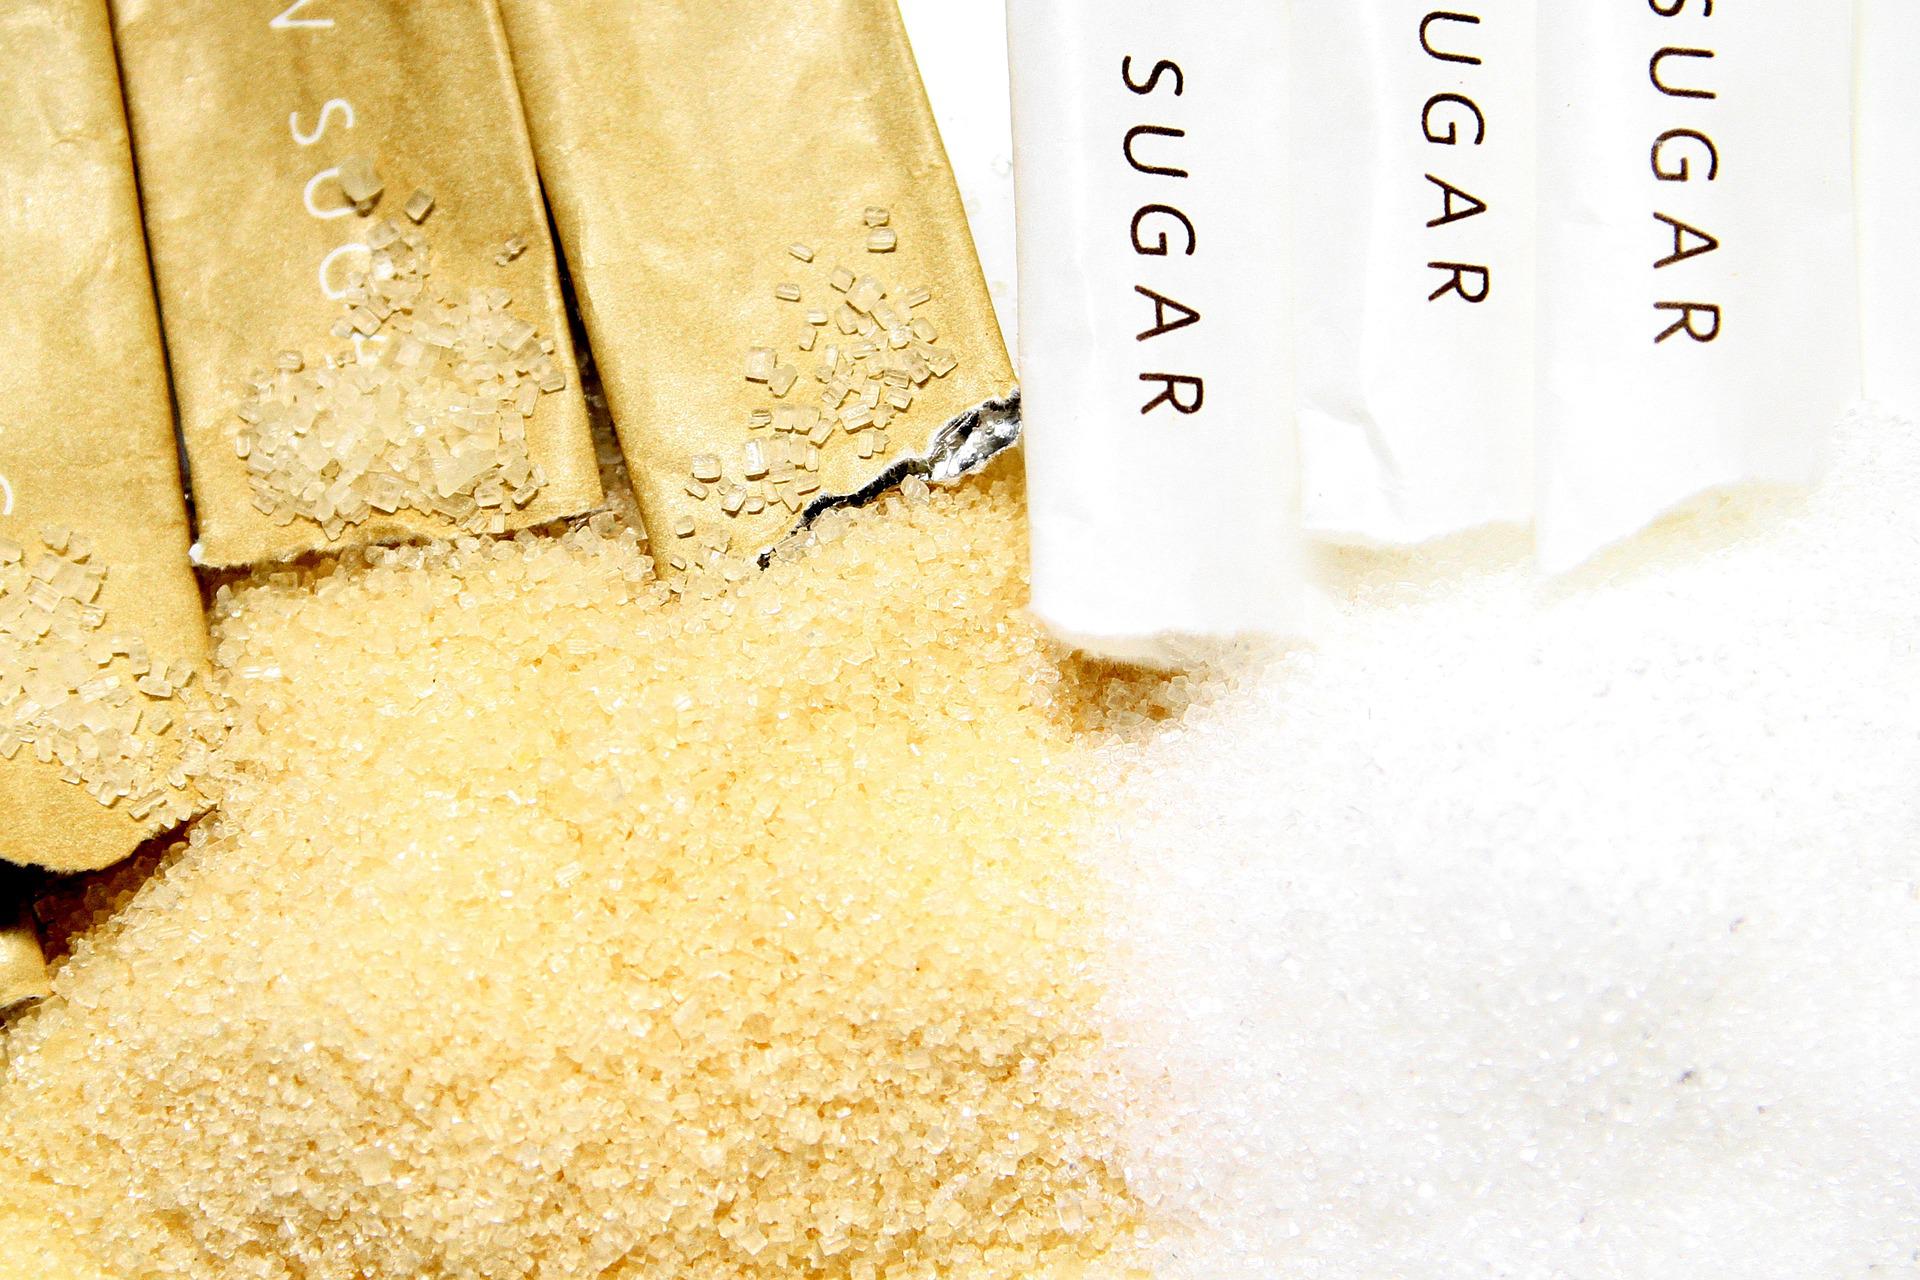 Smeđi naspram bijelog šećera – u čemu je razlika?